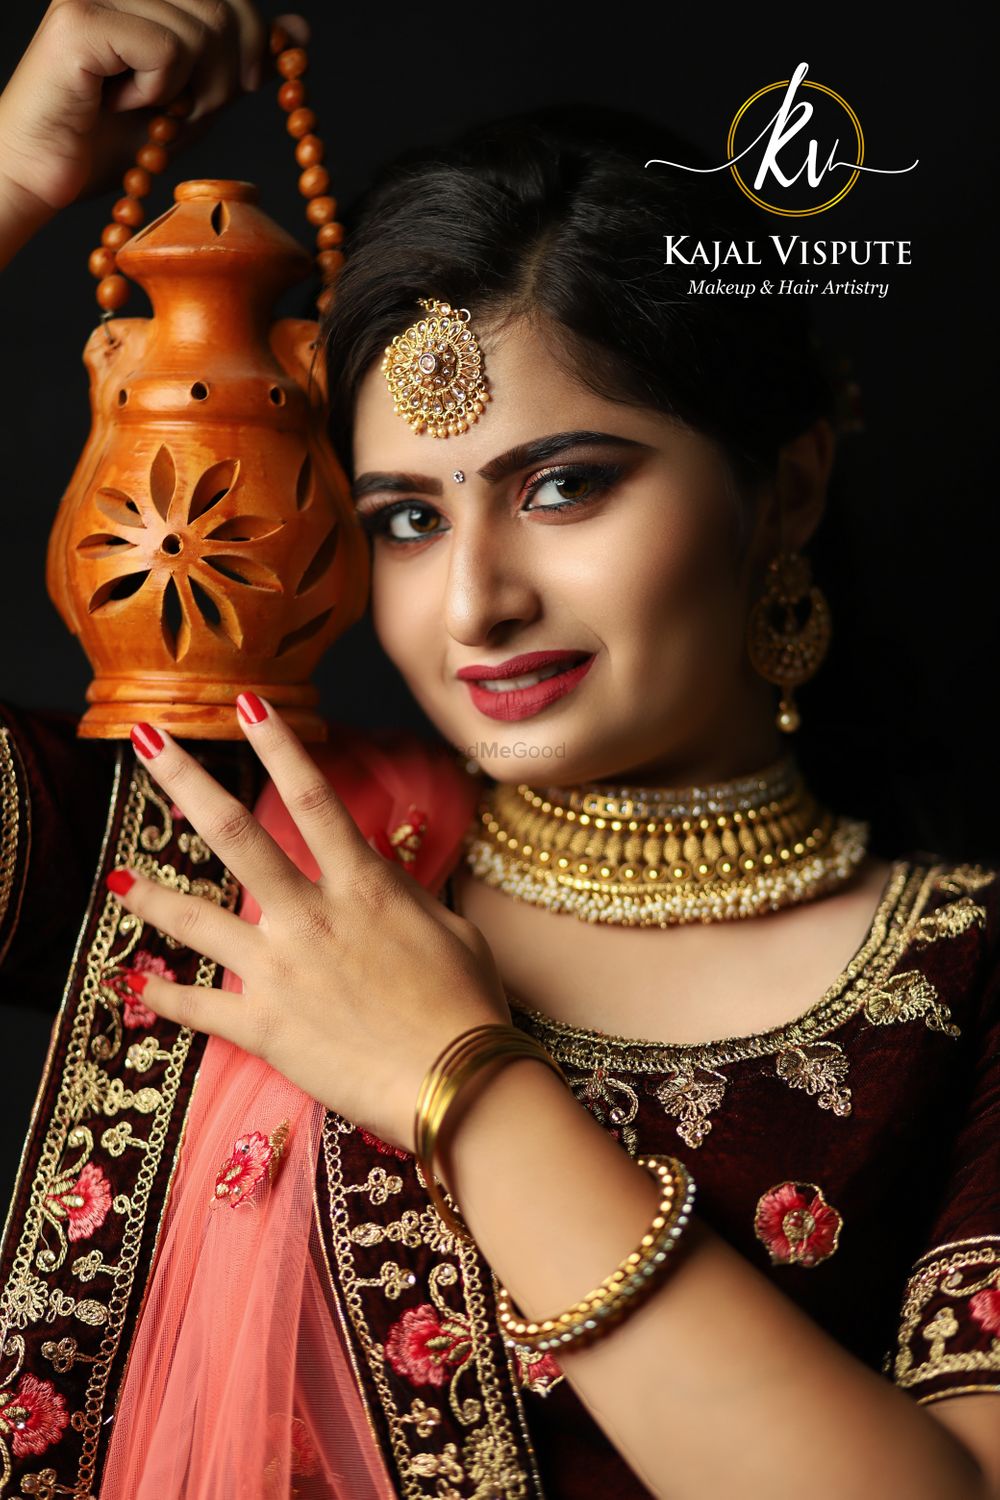 Photo From Bridal - By Kajal Vispute Makeup & Hair Artistry